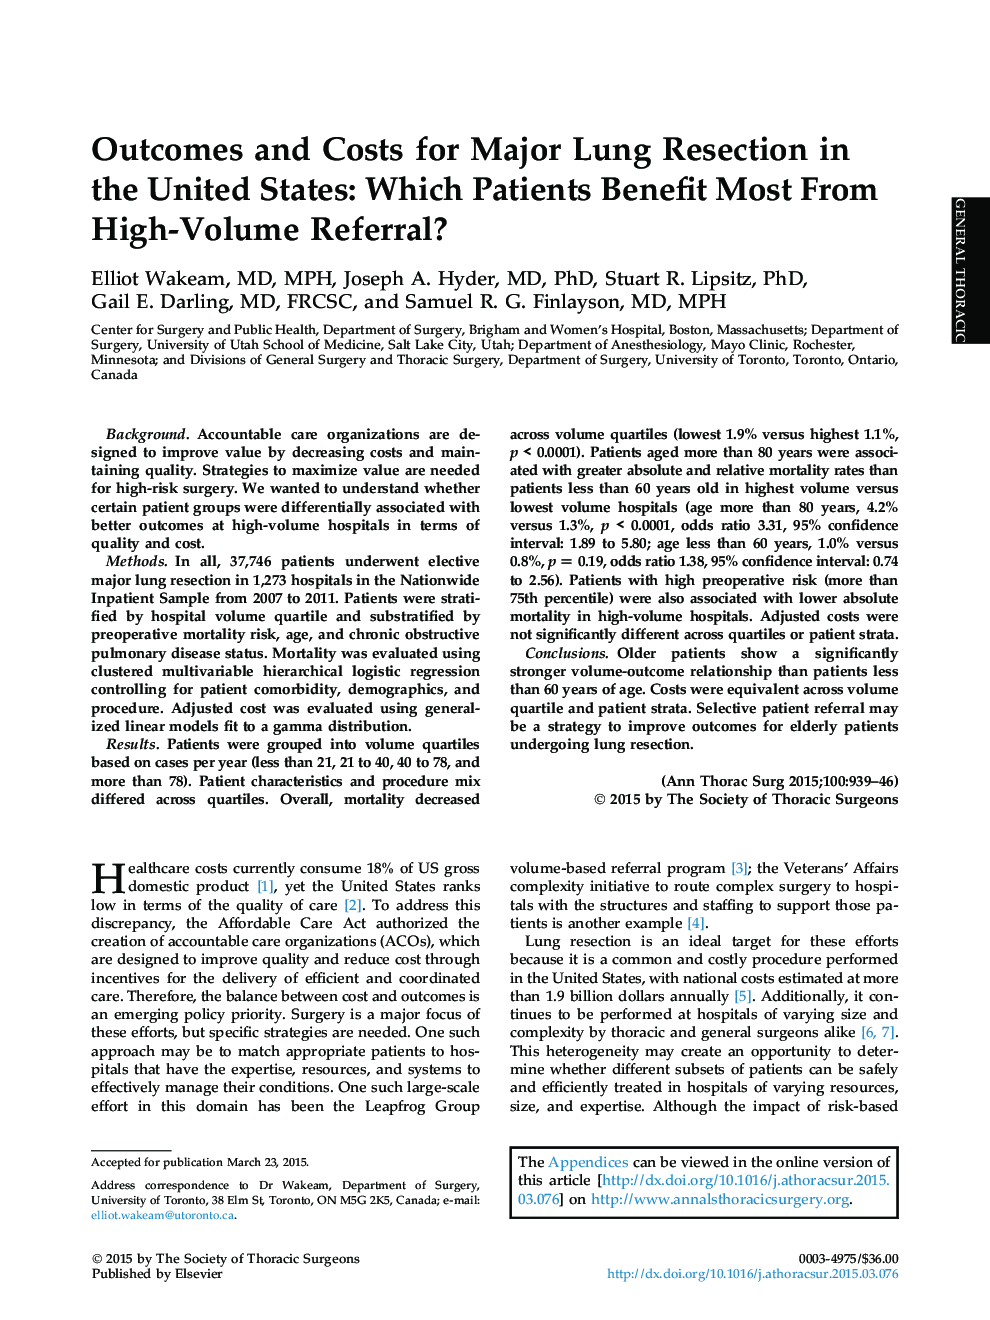 نتایج و هزینه های عمده ی برداشتن ریه ها در ایالات متحده: کدام بیماران بیشتر از رجوع به میزان زیاد استفاده می کنند؟ 